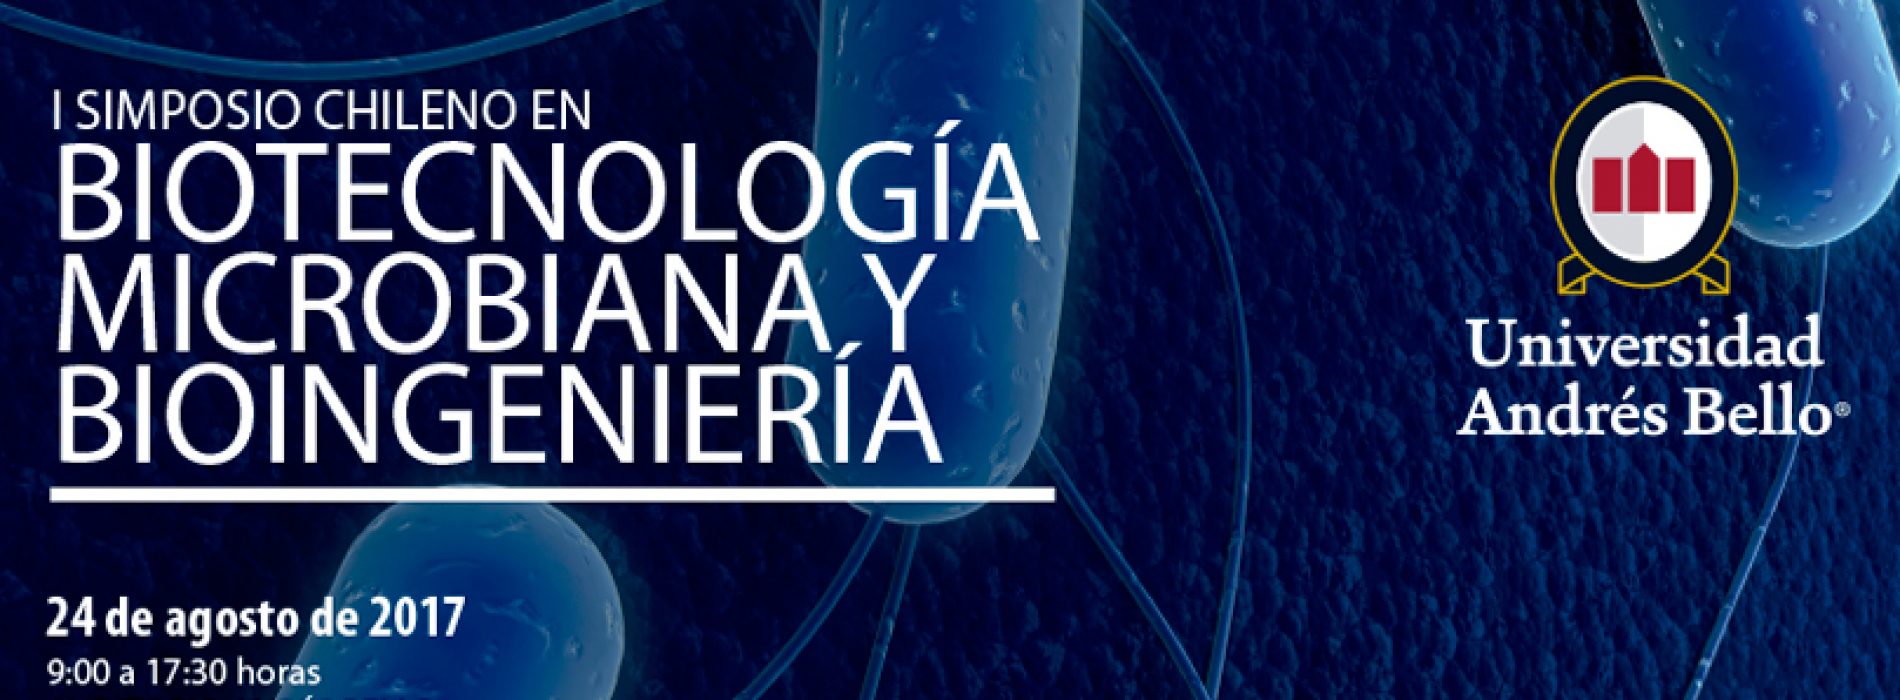 I Simposio Chileno en Biotecnología, Microbiana y Bioingeniería